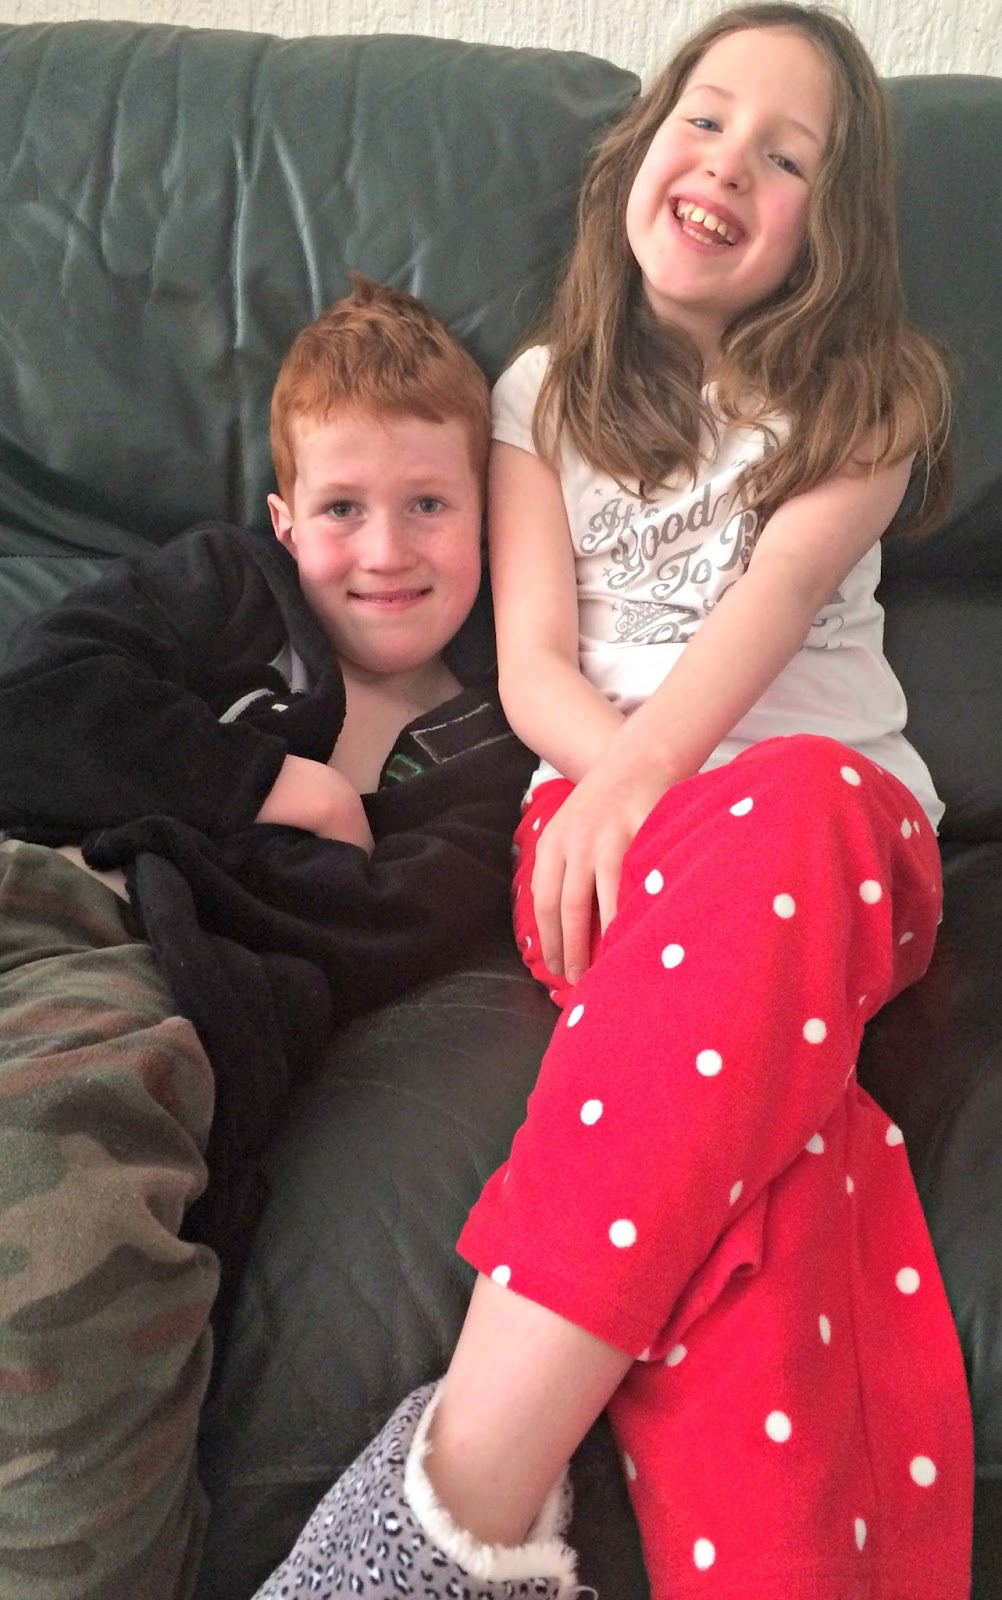 Caitlin & Ieuan on the sofa